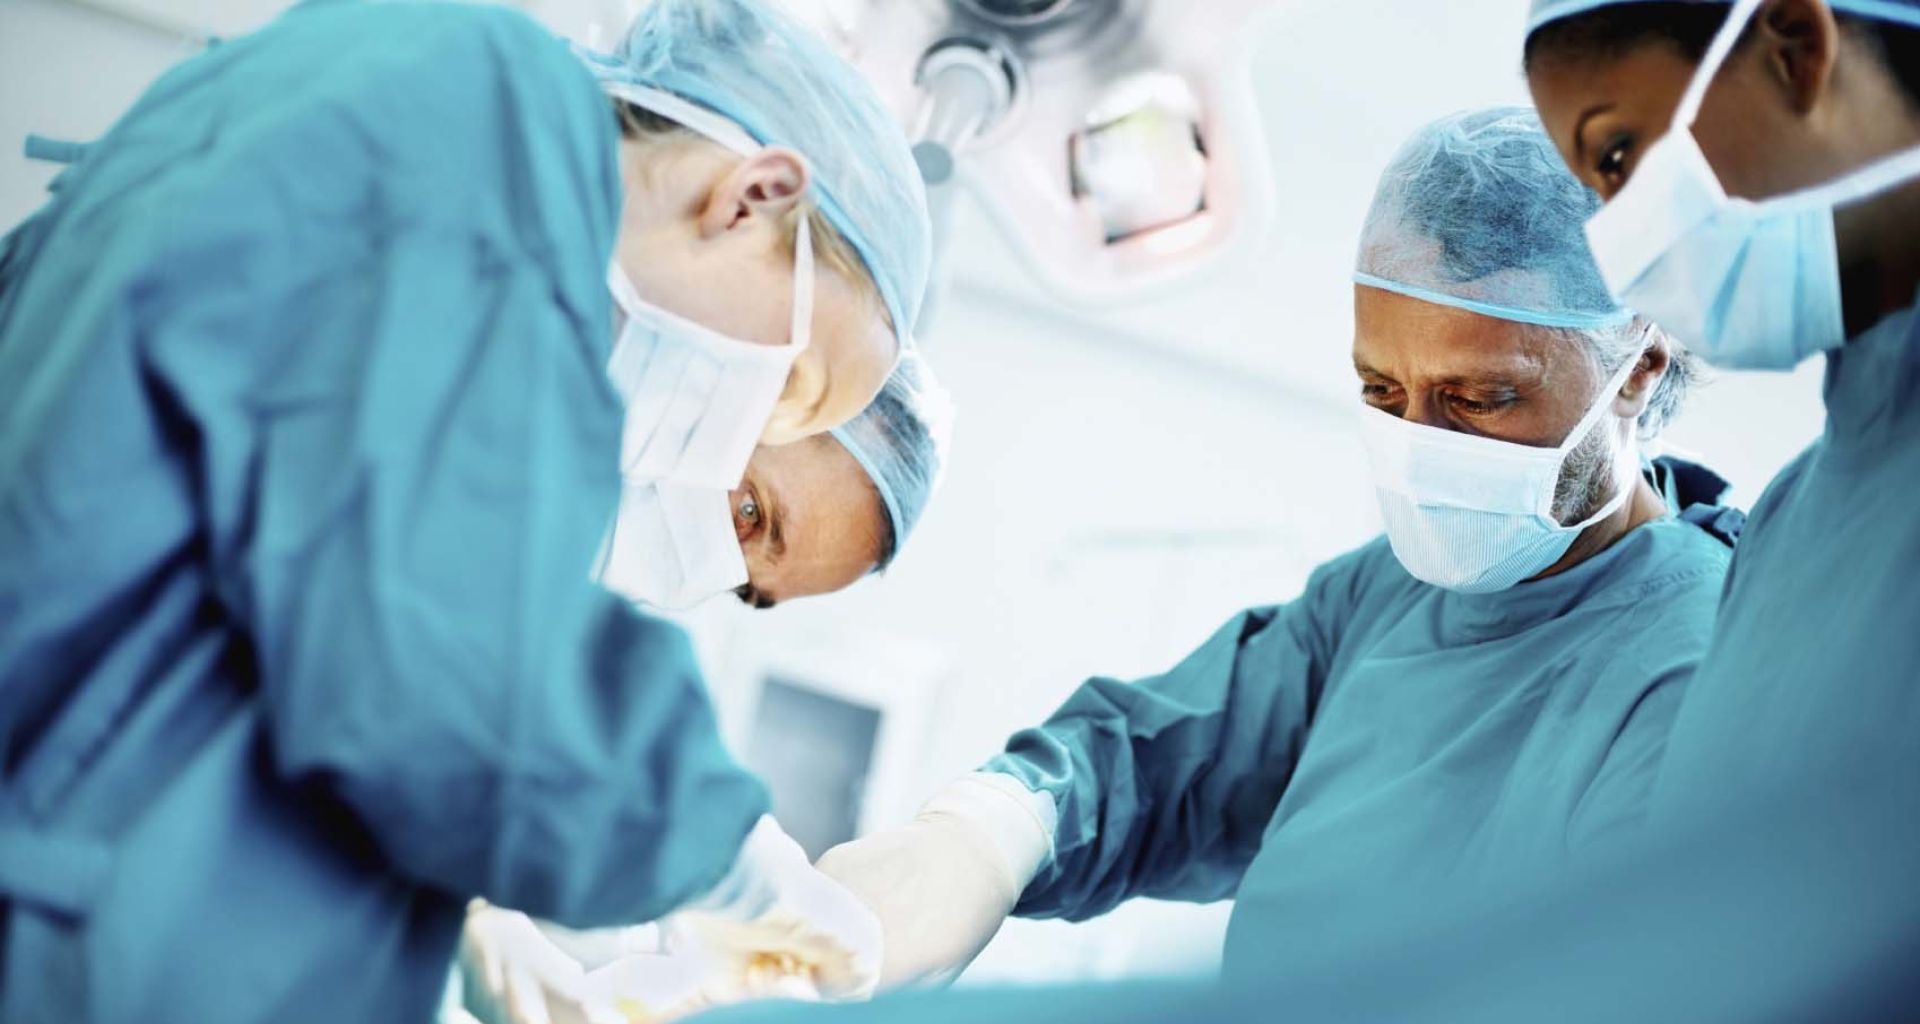 مخاطر تناثر الدماء إلى عيون الجراحين والمساعدين خلال العمليات الجراحية